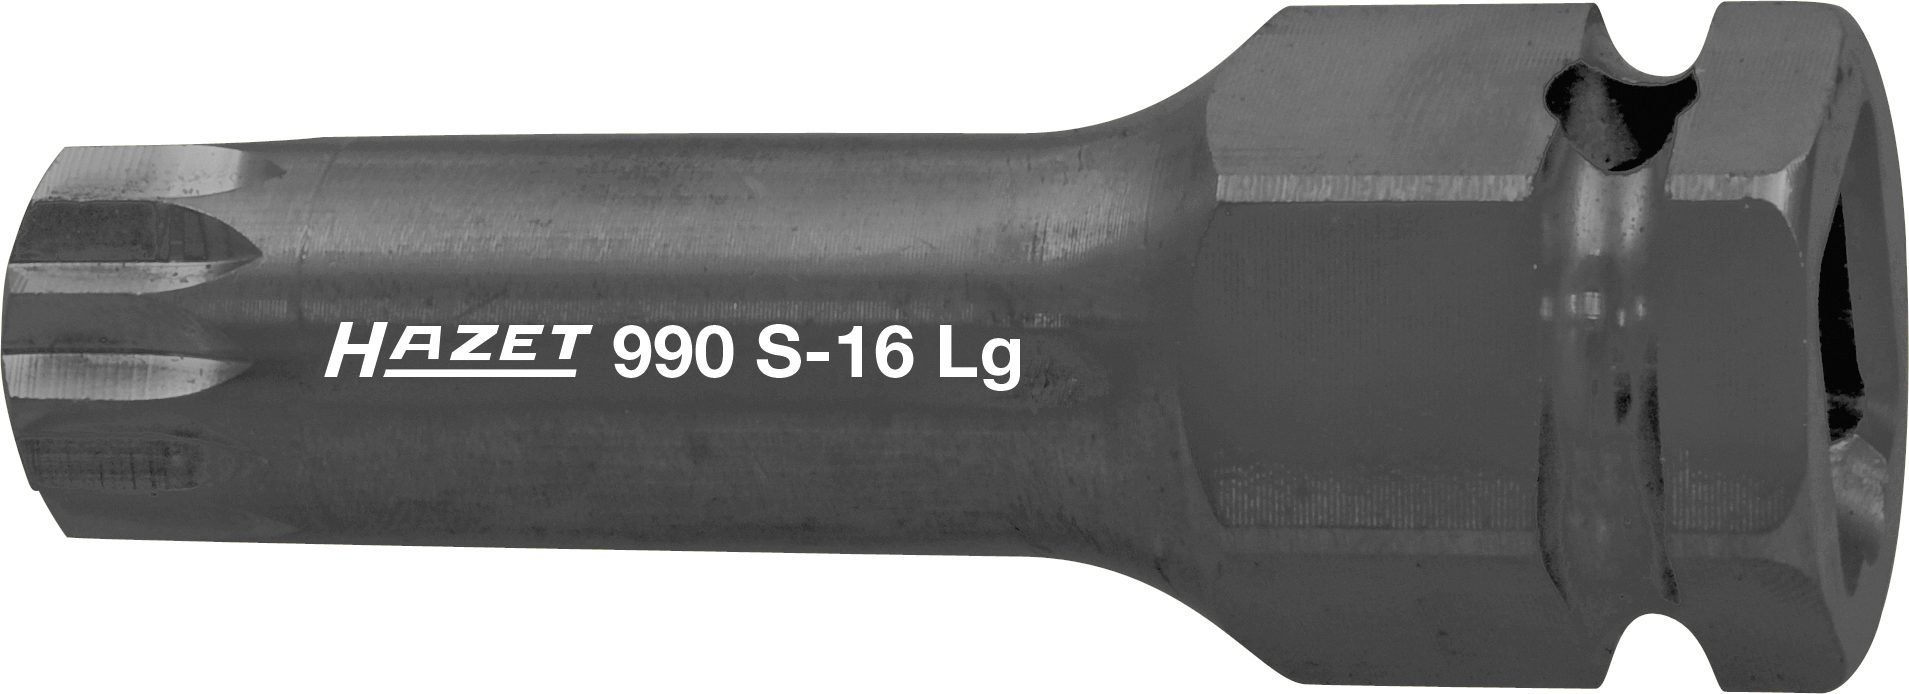 990S-16LG HAZET Kraft-Schraubendr.-Einsatz, Steckschlüssel Hazet